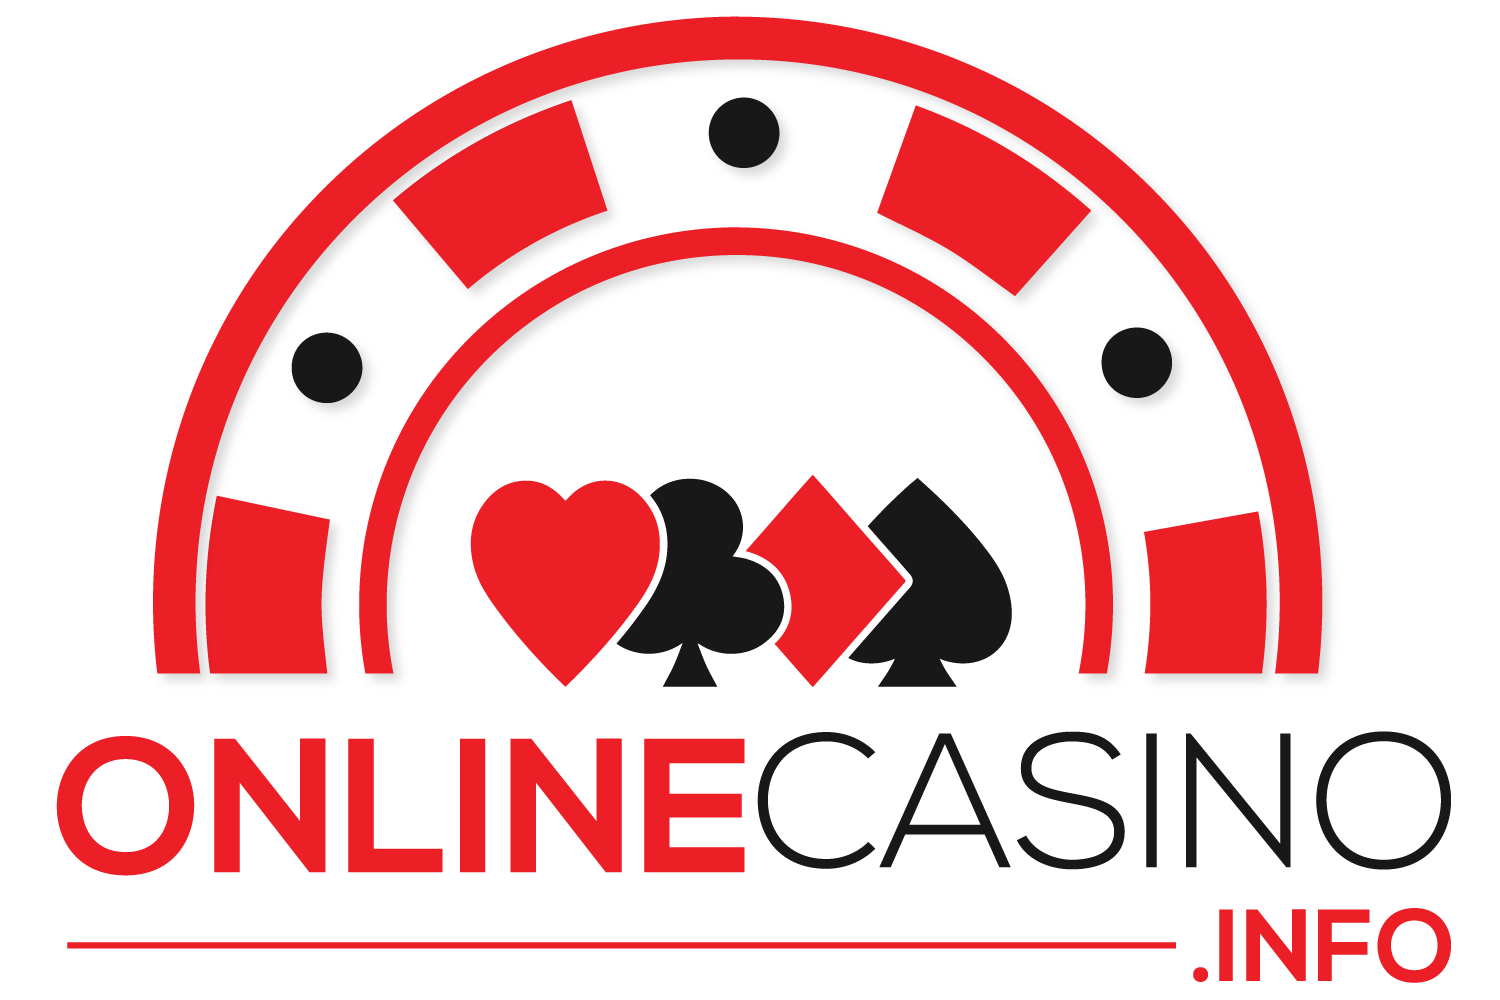 online casino information